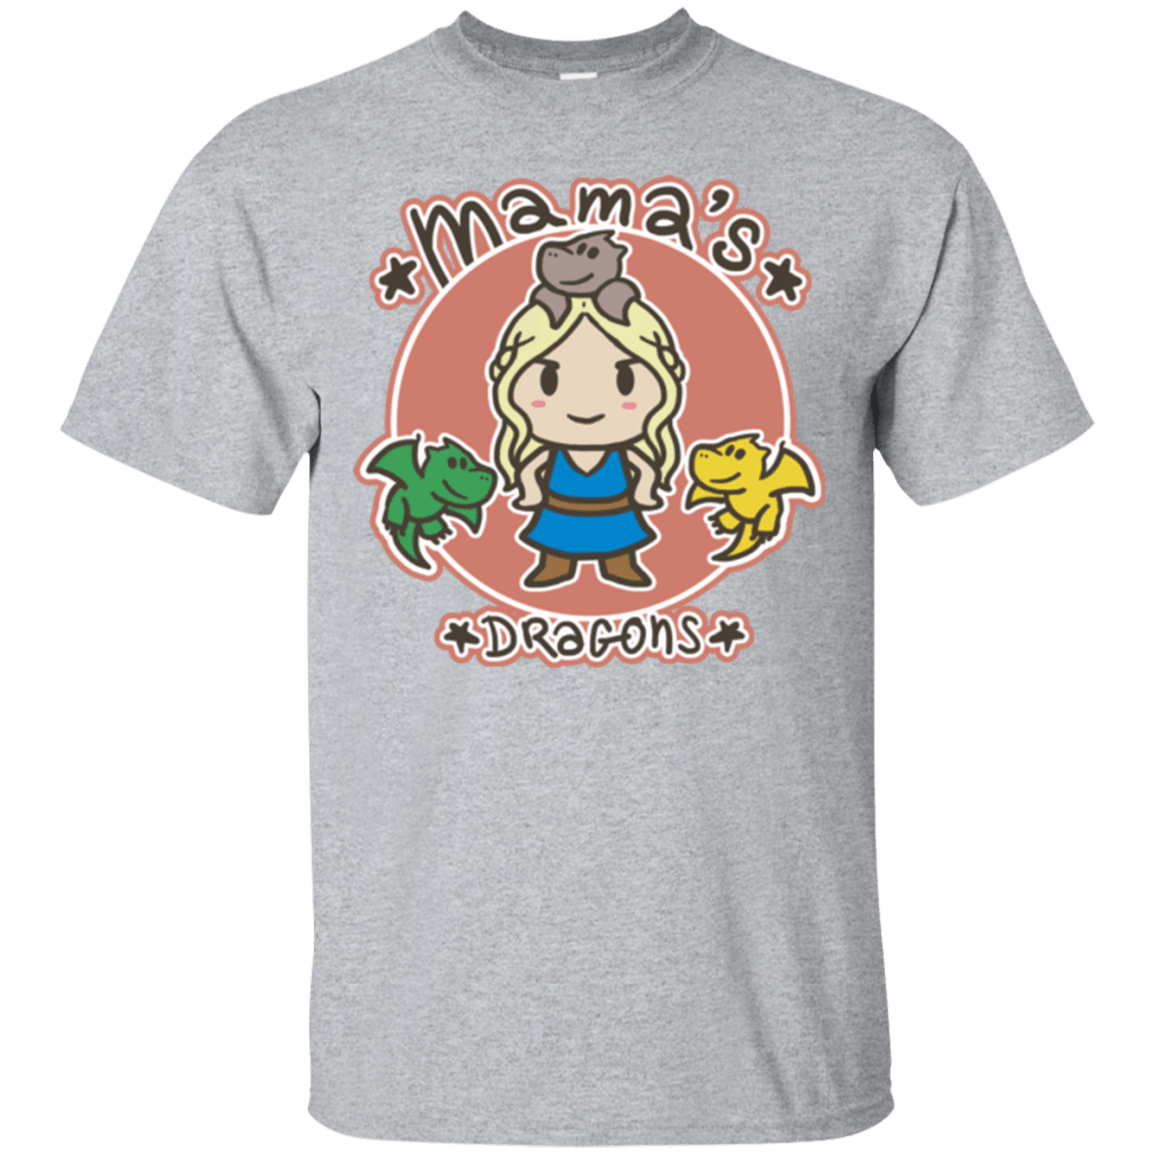 T-Shirts Sport Grey / Small Mamas Dragons T-Shirt